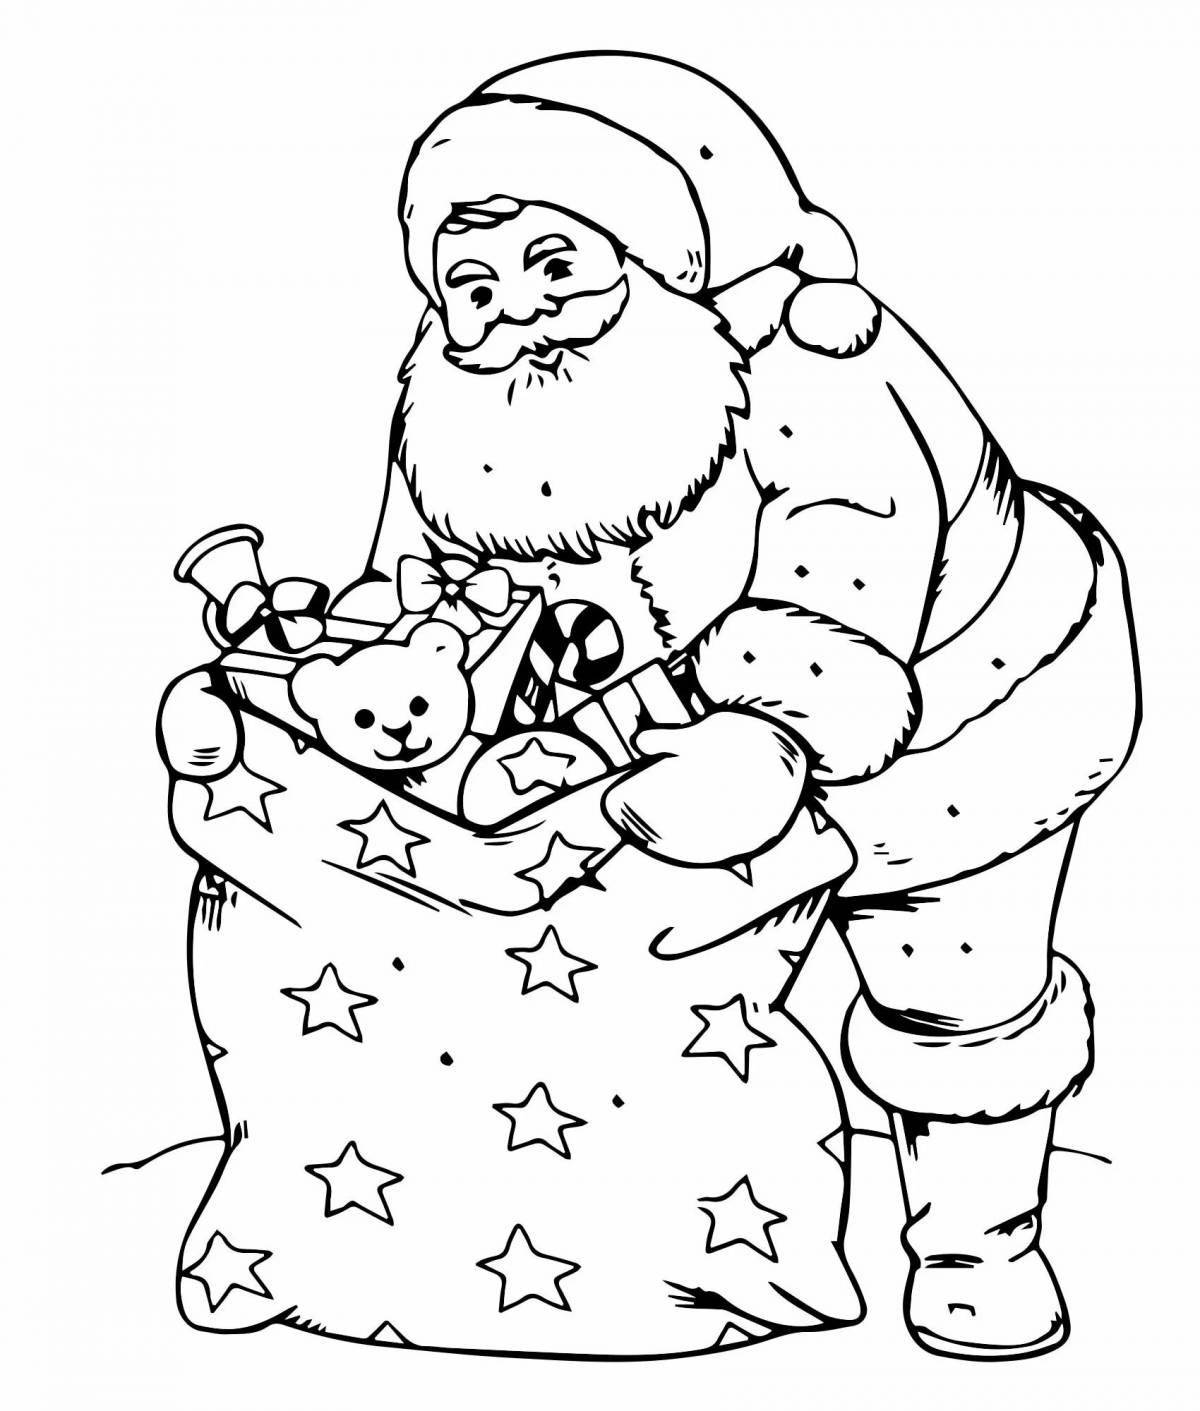 Humorous santa claus coloring book for kids